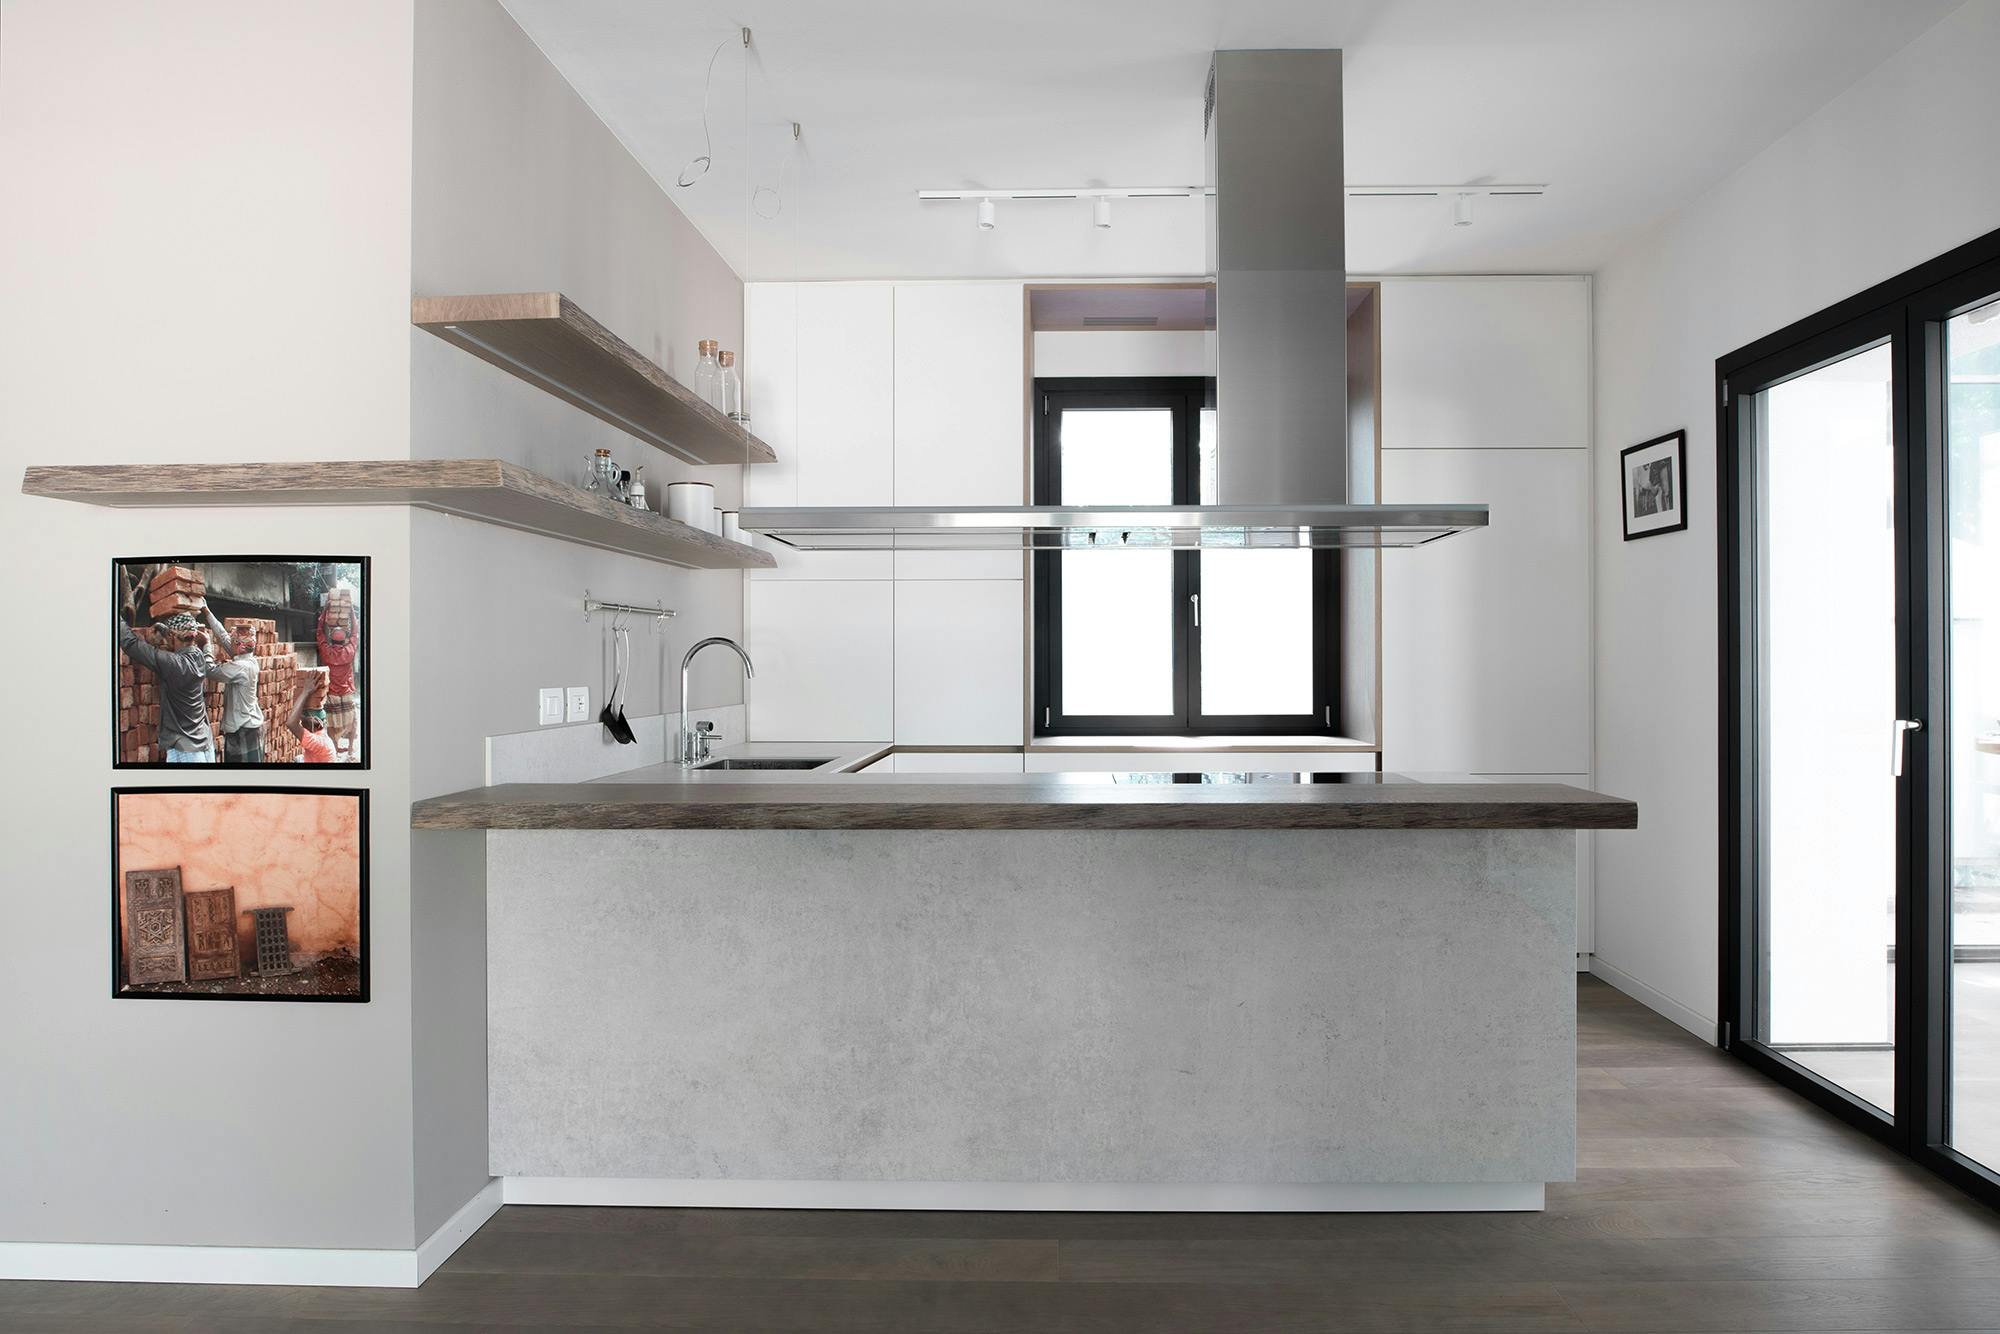 Numero immagine 49 della sezione corrente di Professional features for a domestic kitchen worktop di Cosentino Italia